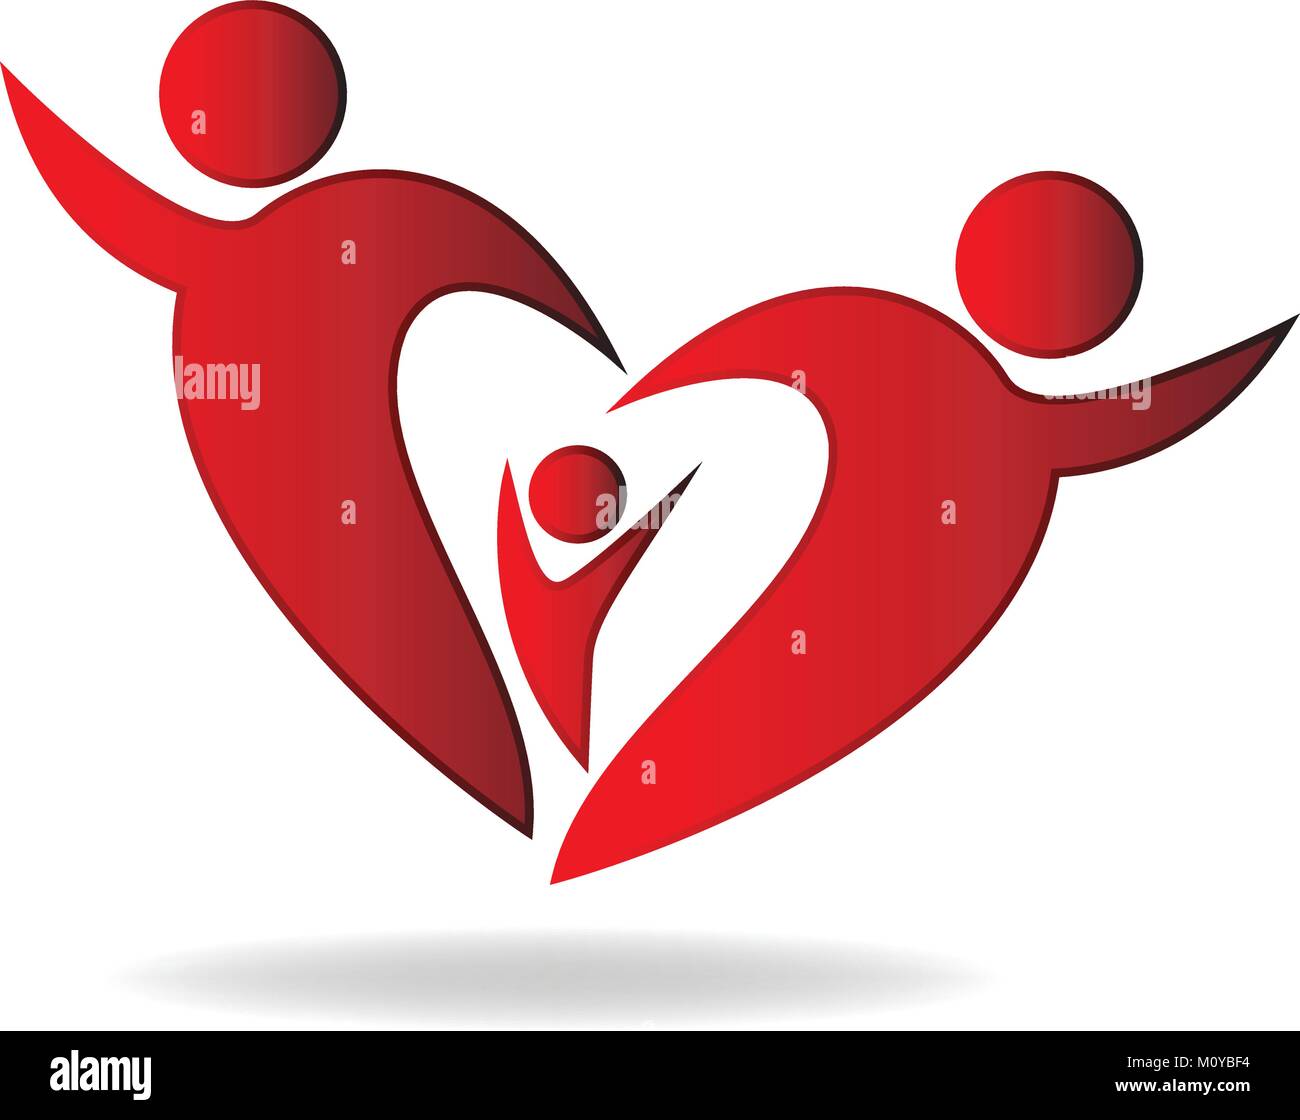 Family heart logo vector Stock Vector